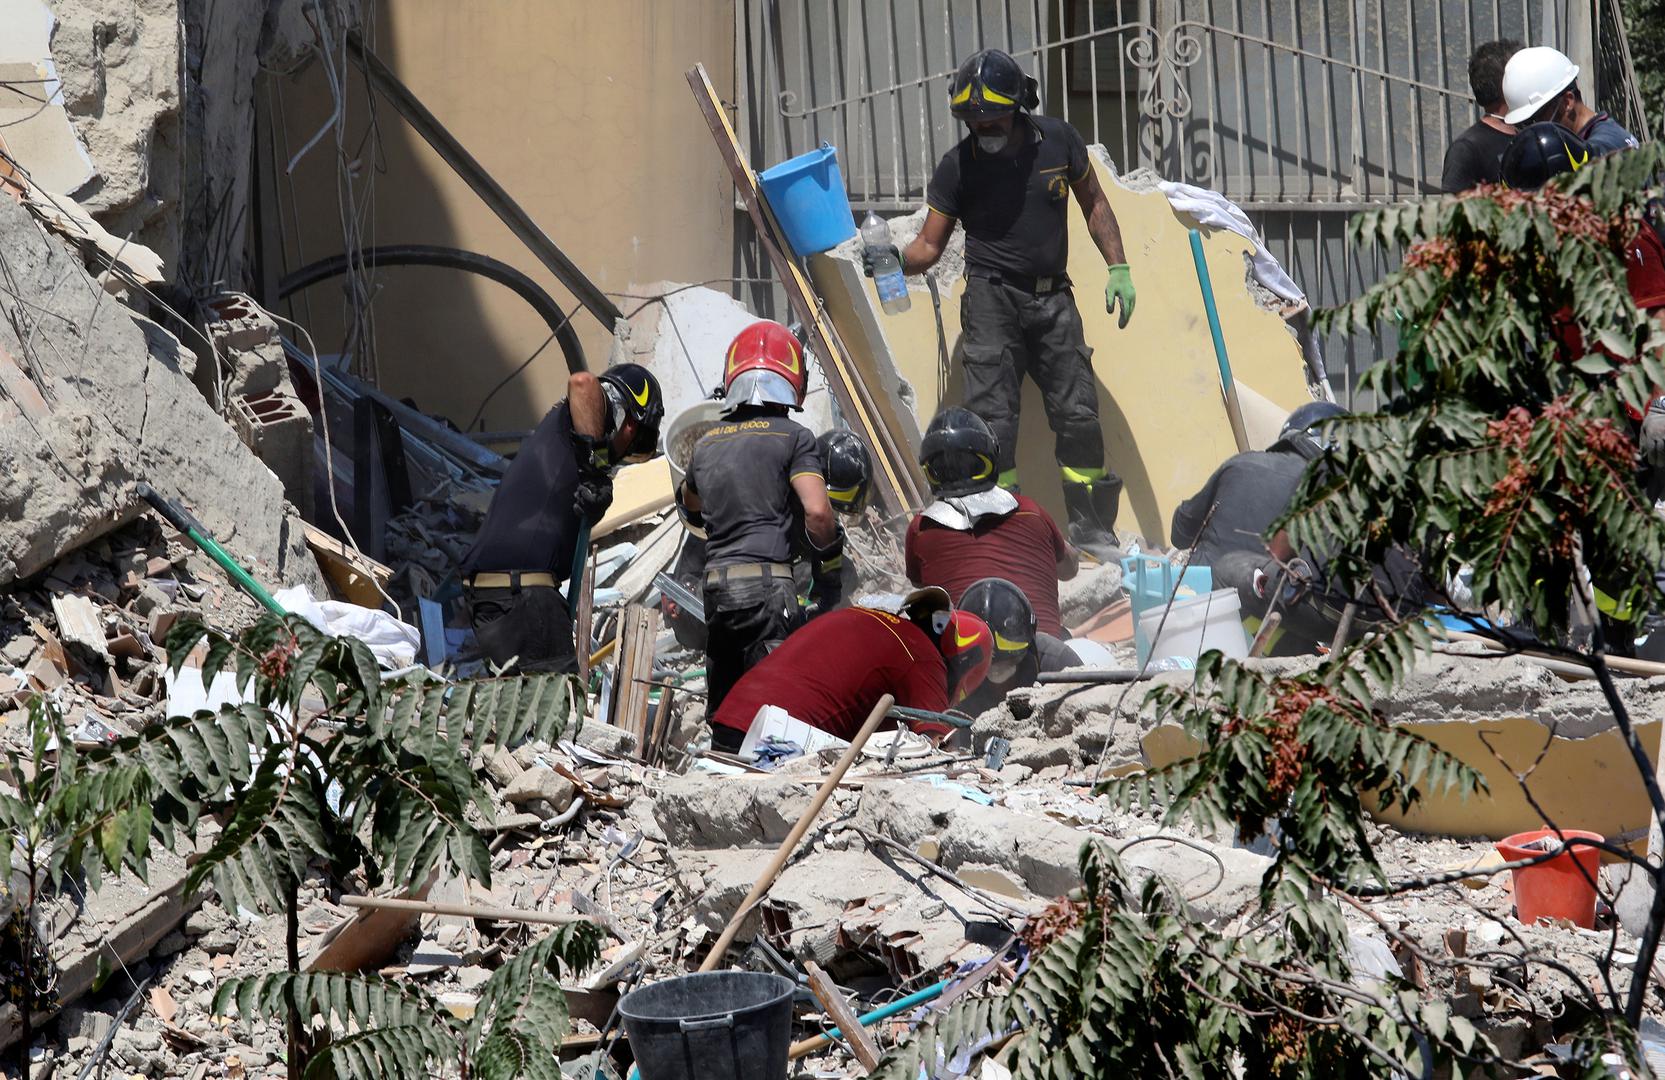 Talijanski mediji kažu da su dvije obitelji živjele u toj zgradi. Među nestalima je i dvoje djece.